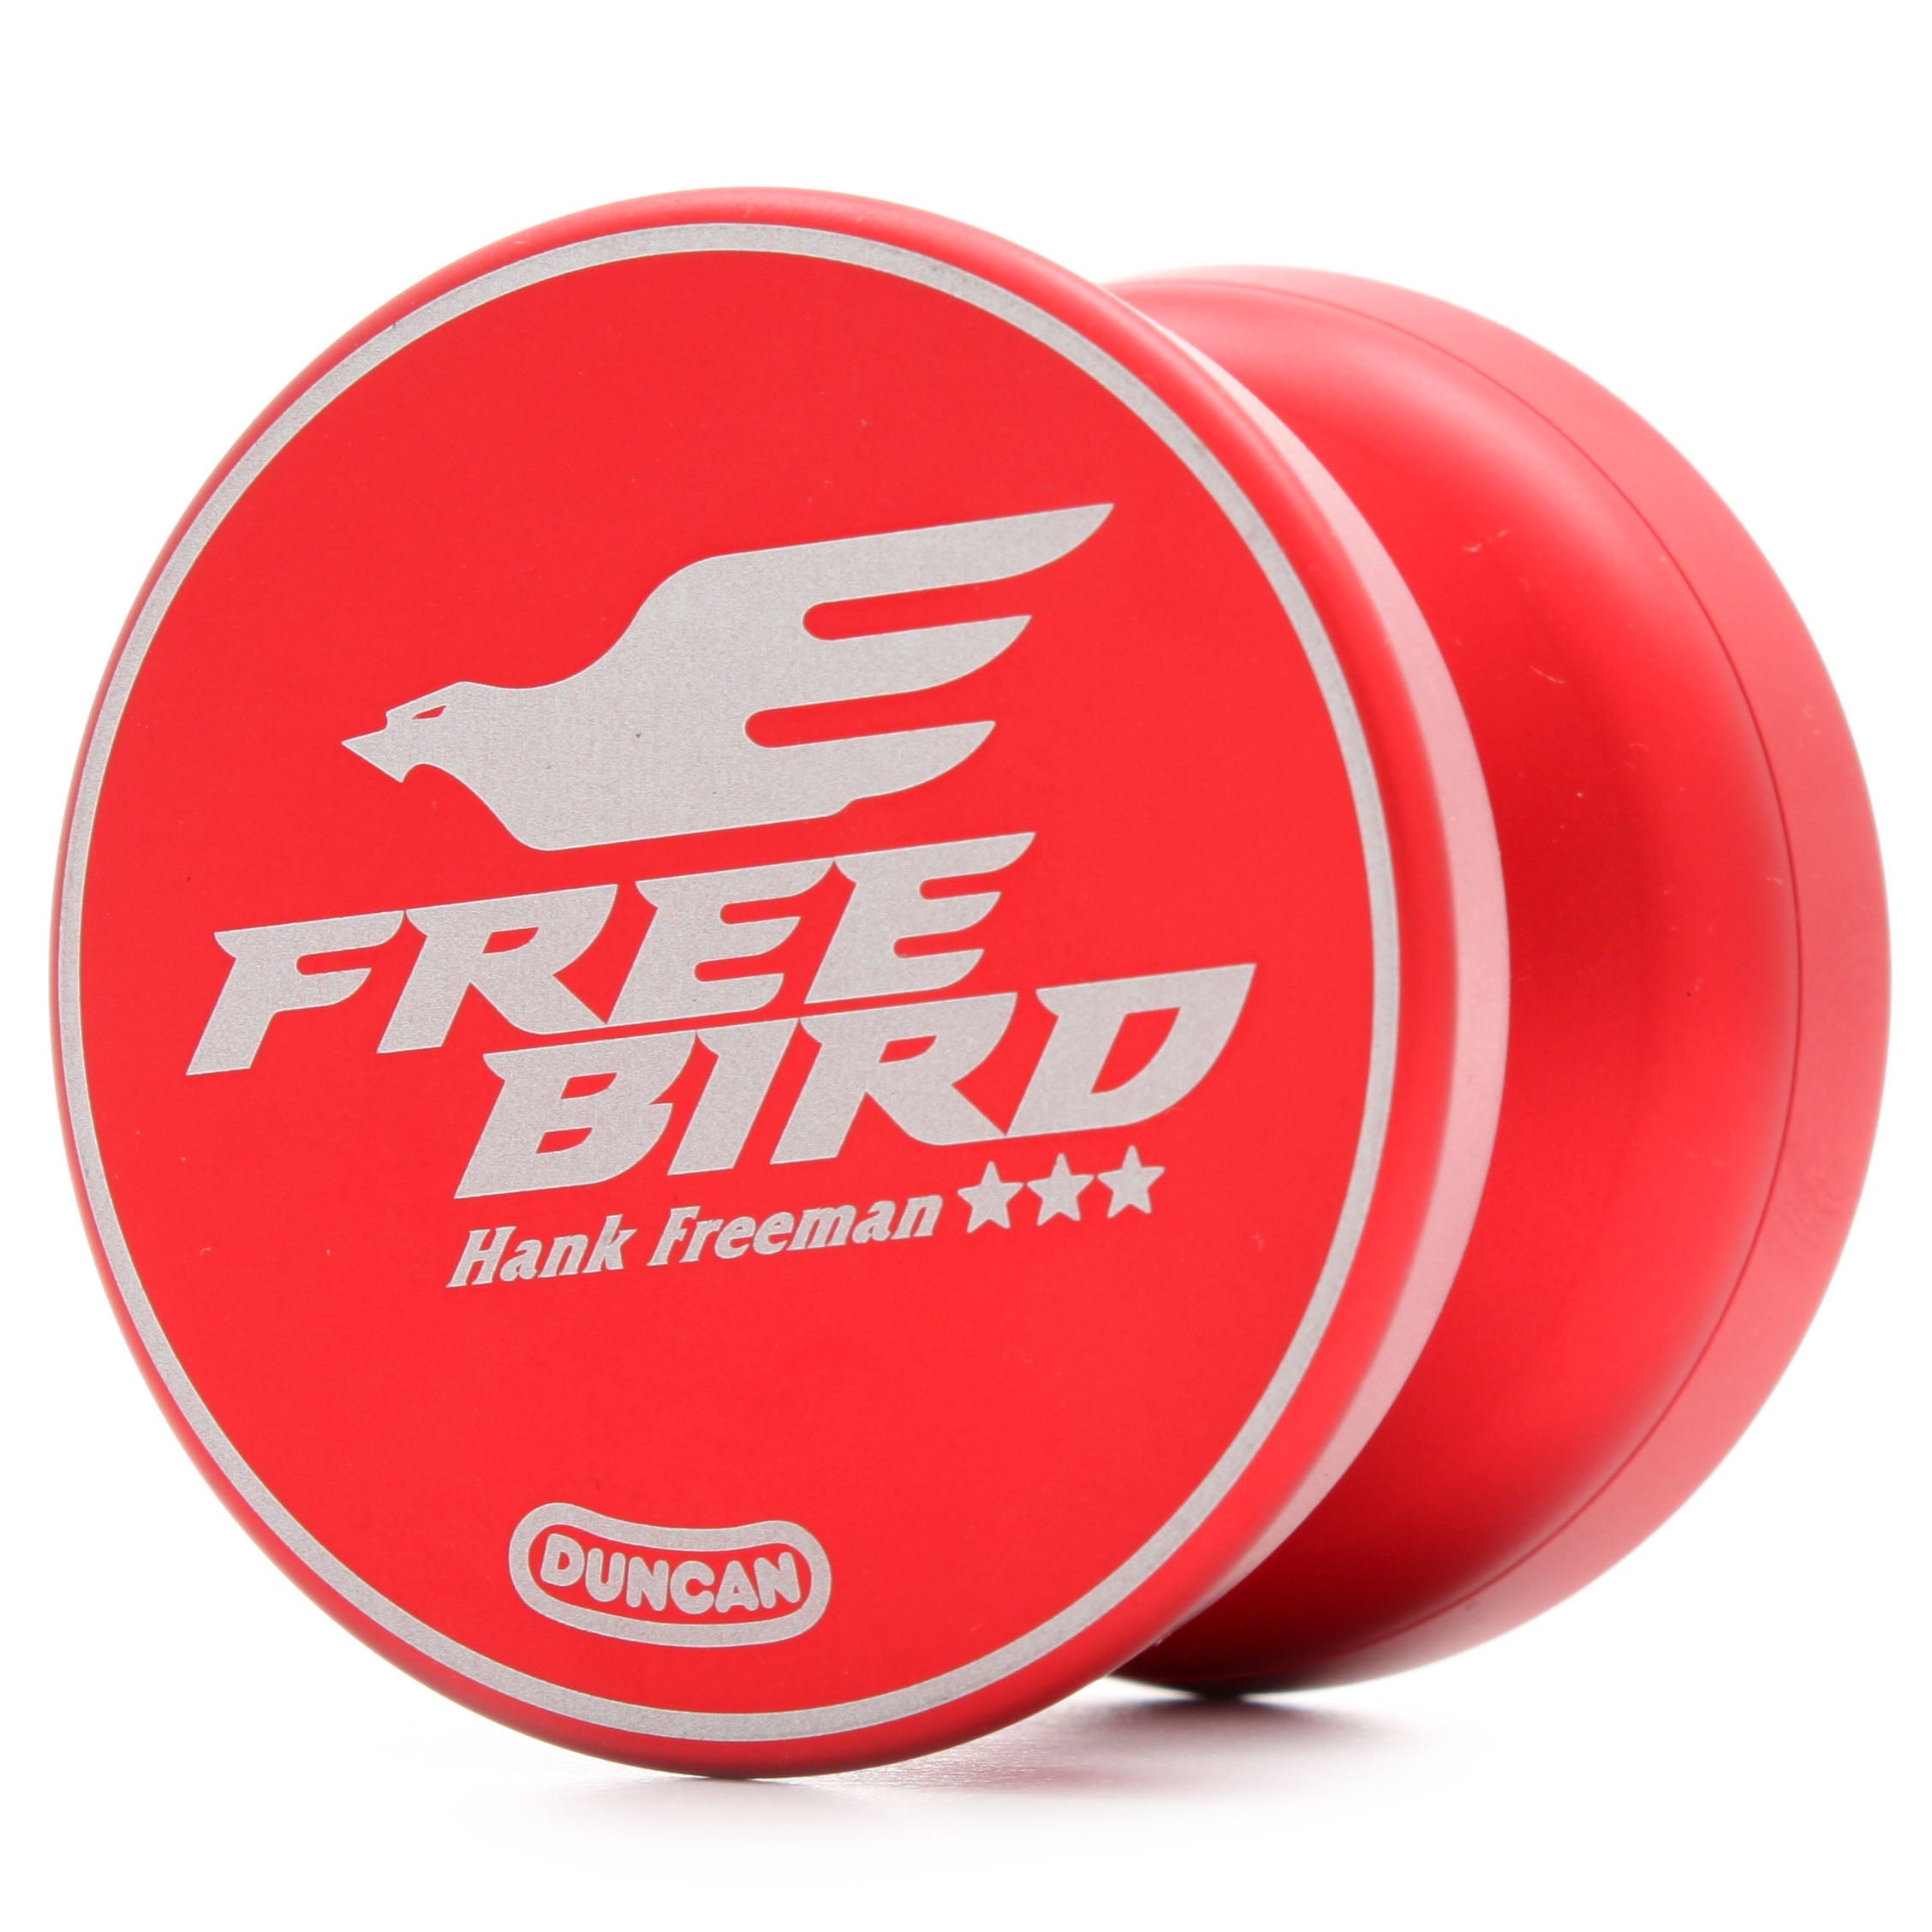 Freebird III (Outlet)